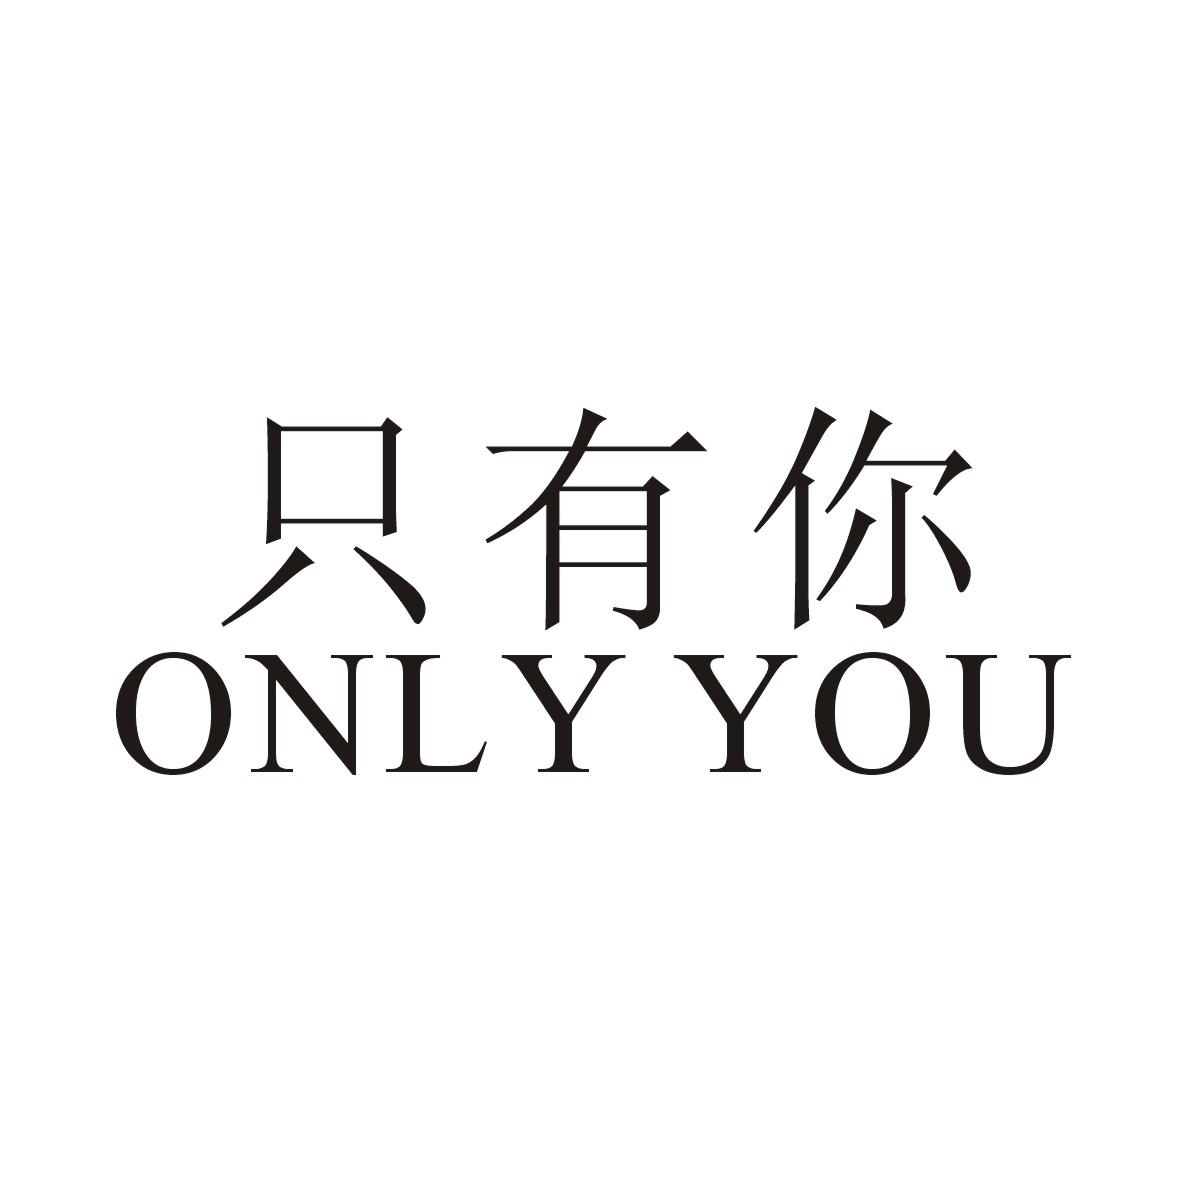 onlyyou中文意思图片